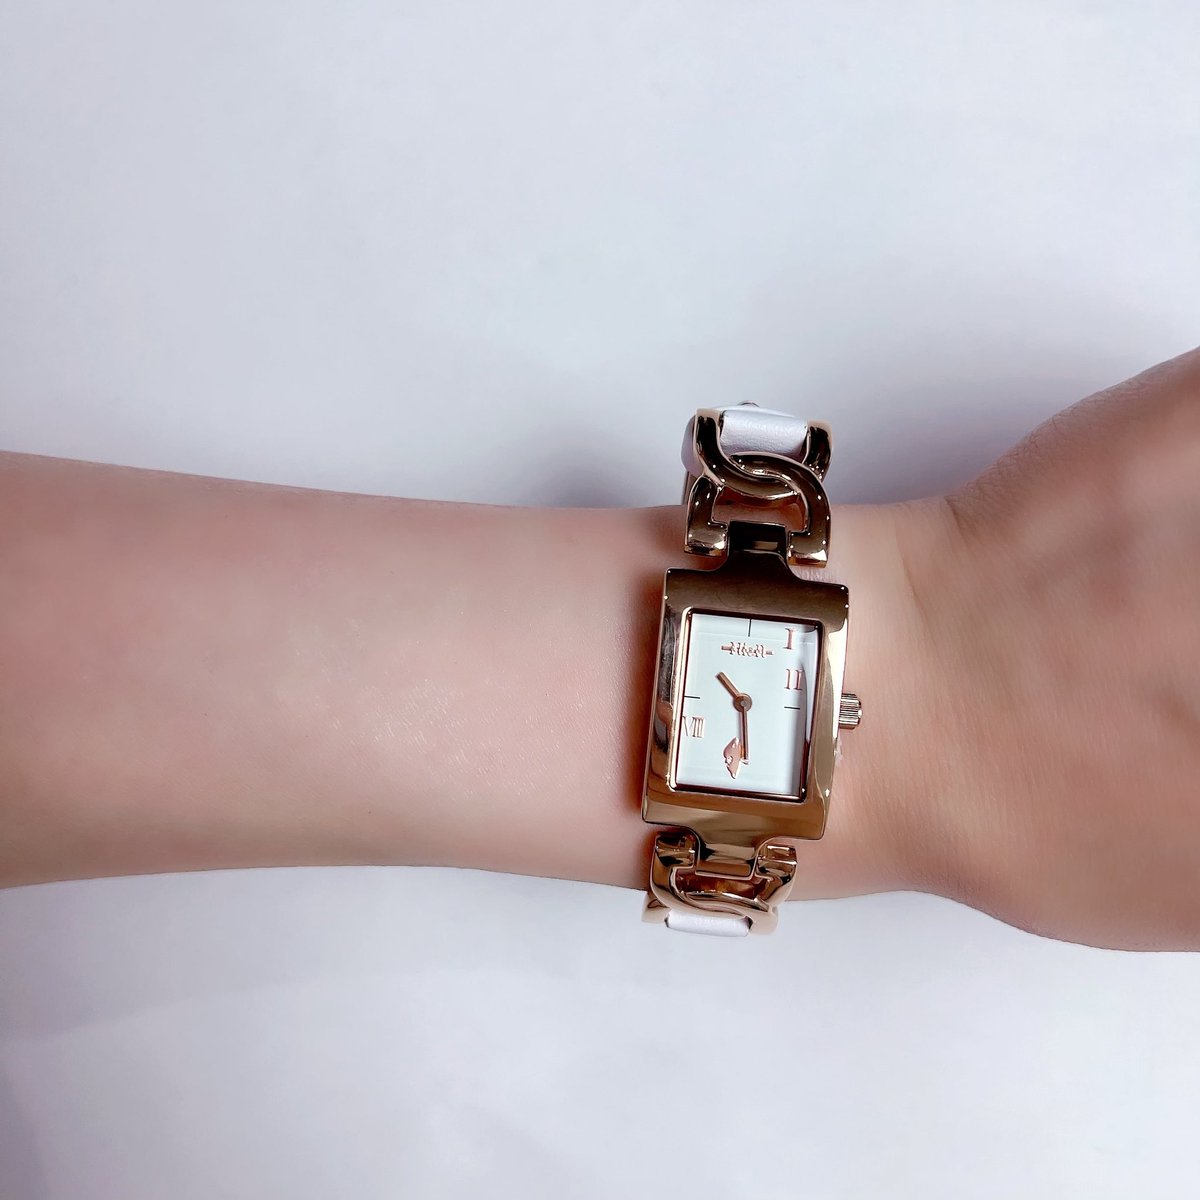 🎁本日〆切プレゼント企画🎁 当店オリジナル腕時計を 🎁3名様にプレゼント🎁 レディースアイテムです🐰 ◼応募方法 フォロー(@NieR_tokyo) & RT ◼締切〆 本日24時 ※鍵垢の方も対象内です。 是非ご参加ください🙇‍♂️🙇‍♀️